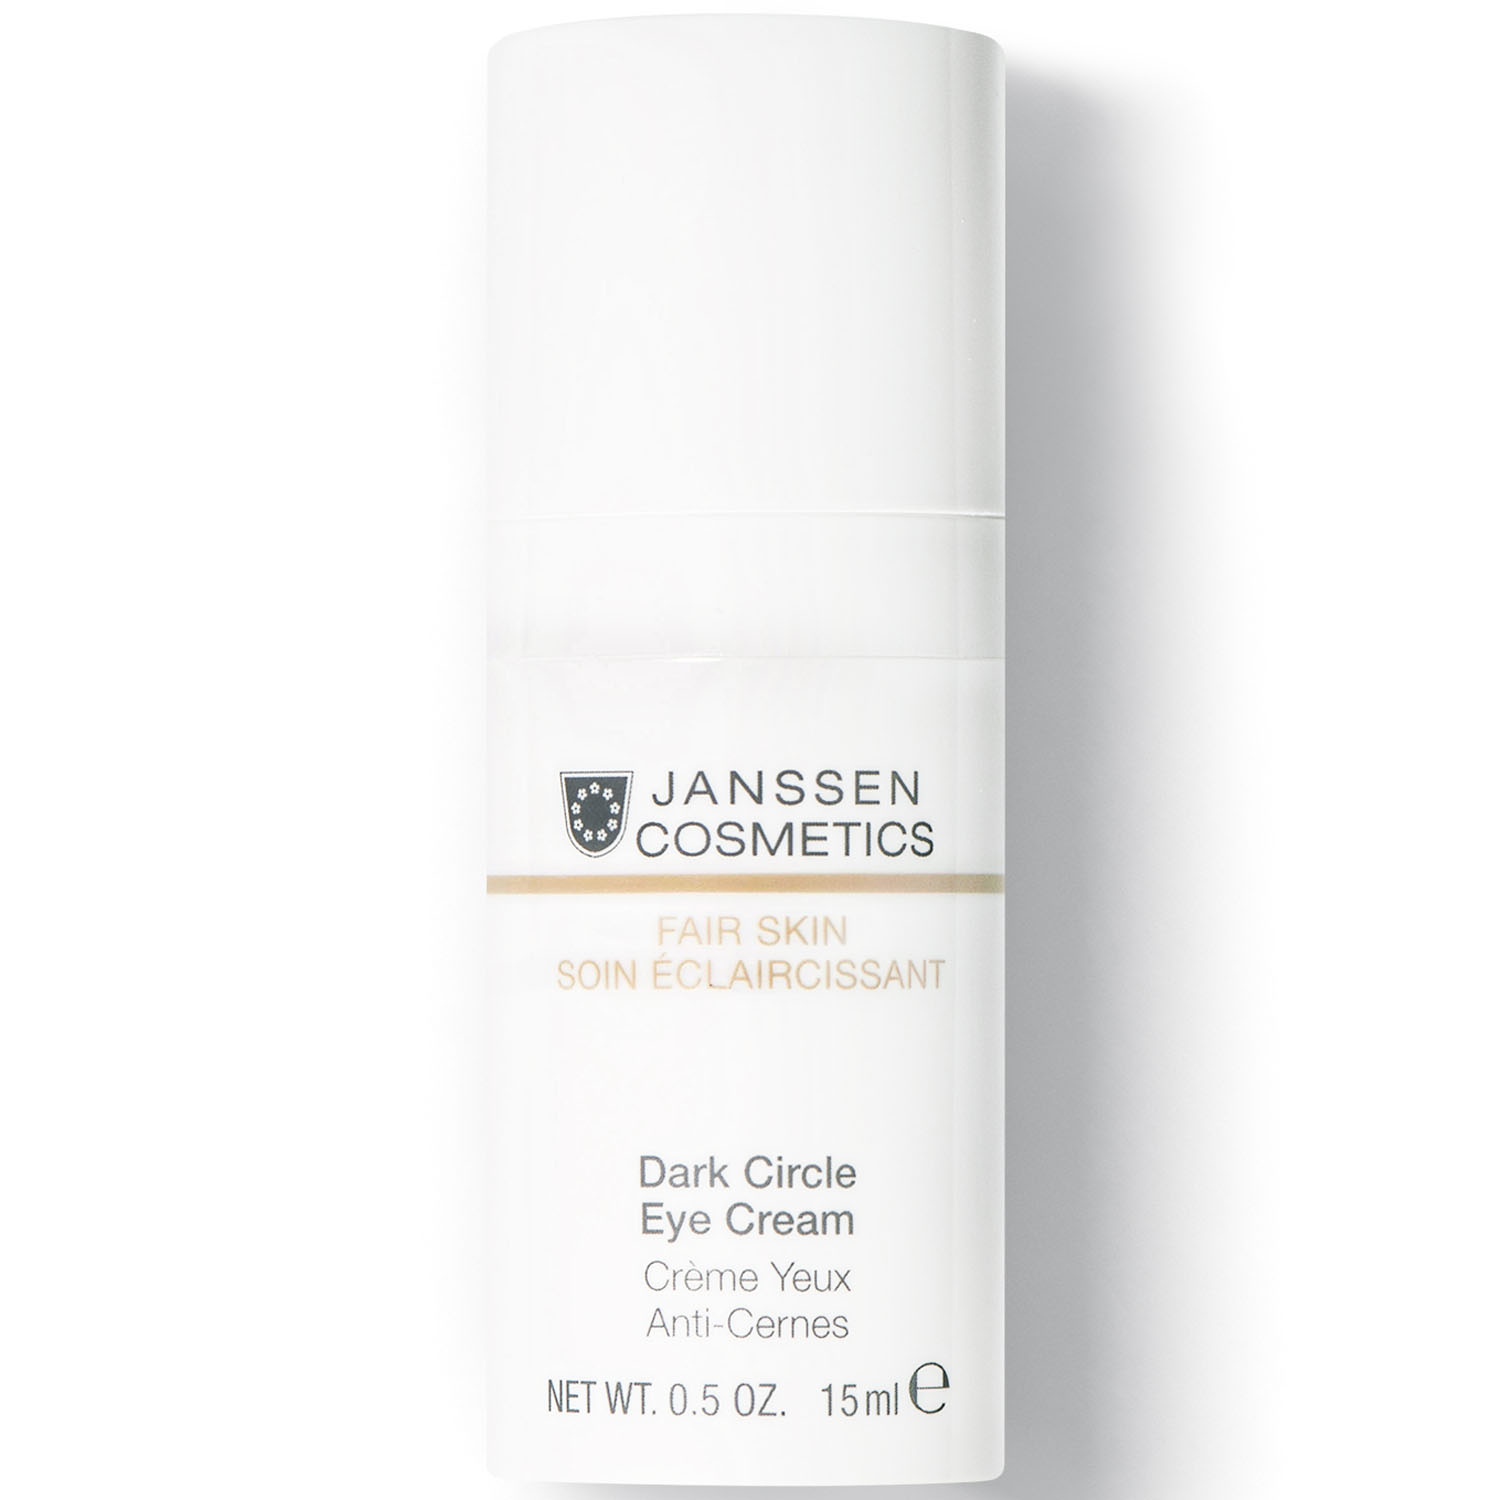 цена Janssen Cosmetics Универсальный увлажняющий крем для глаз от темных кругов, отеков и морщин Dark Circle Eye Cream, 15 мл (Janssen Cosmetics, Fair Skin)